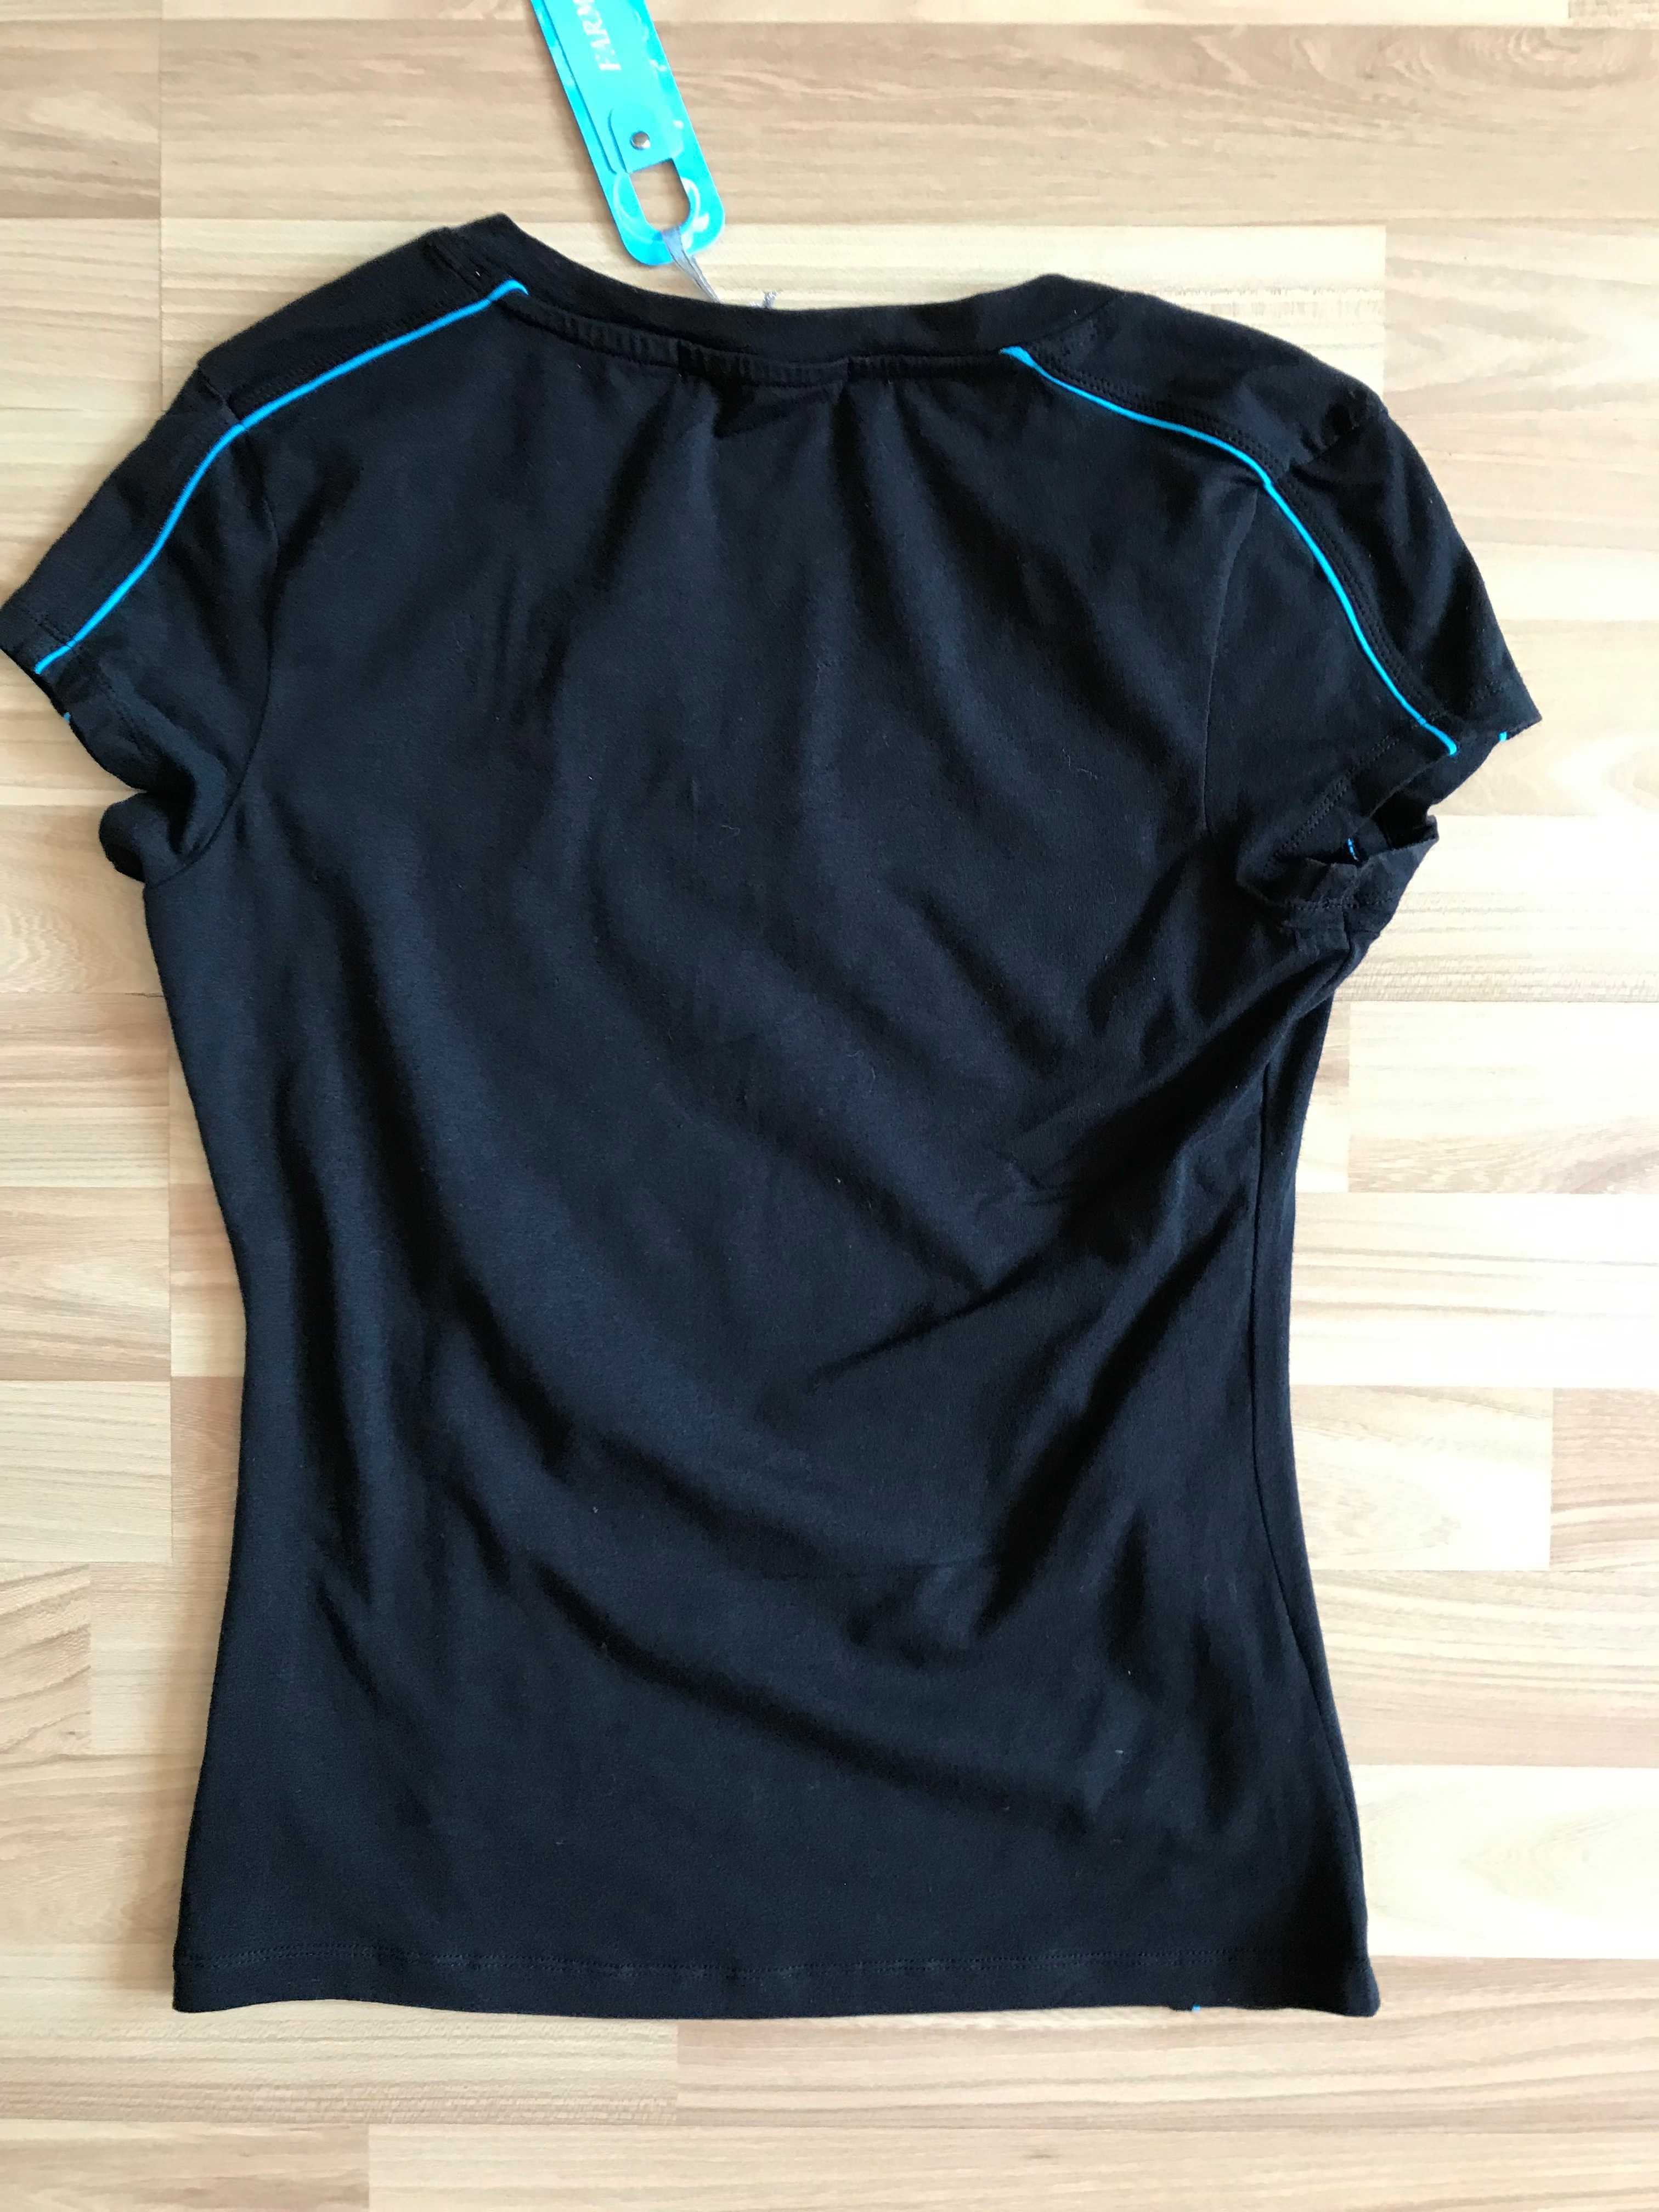 Czarna koszulka sportowa r. 42 do jogi lub biegania z niebieskim pasem